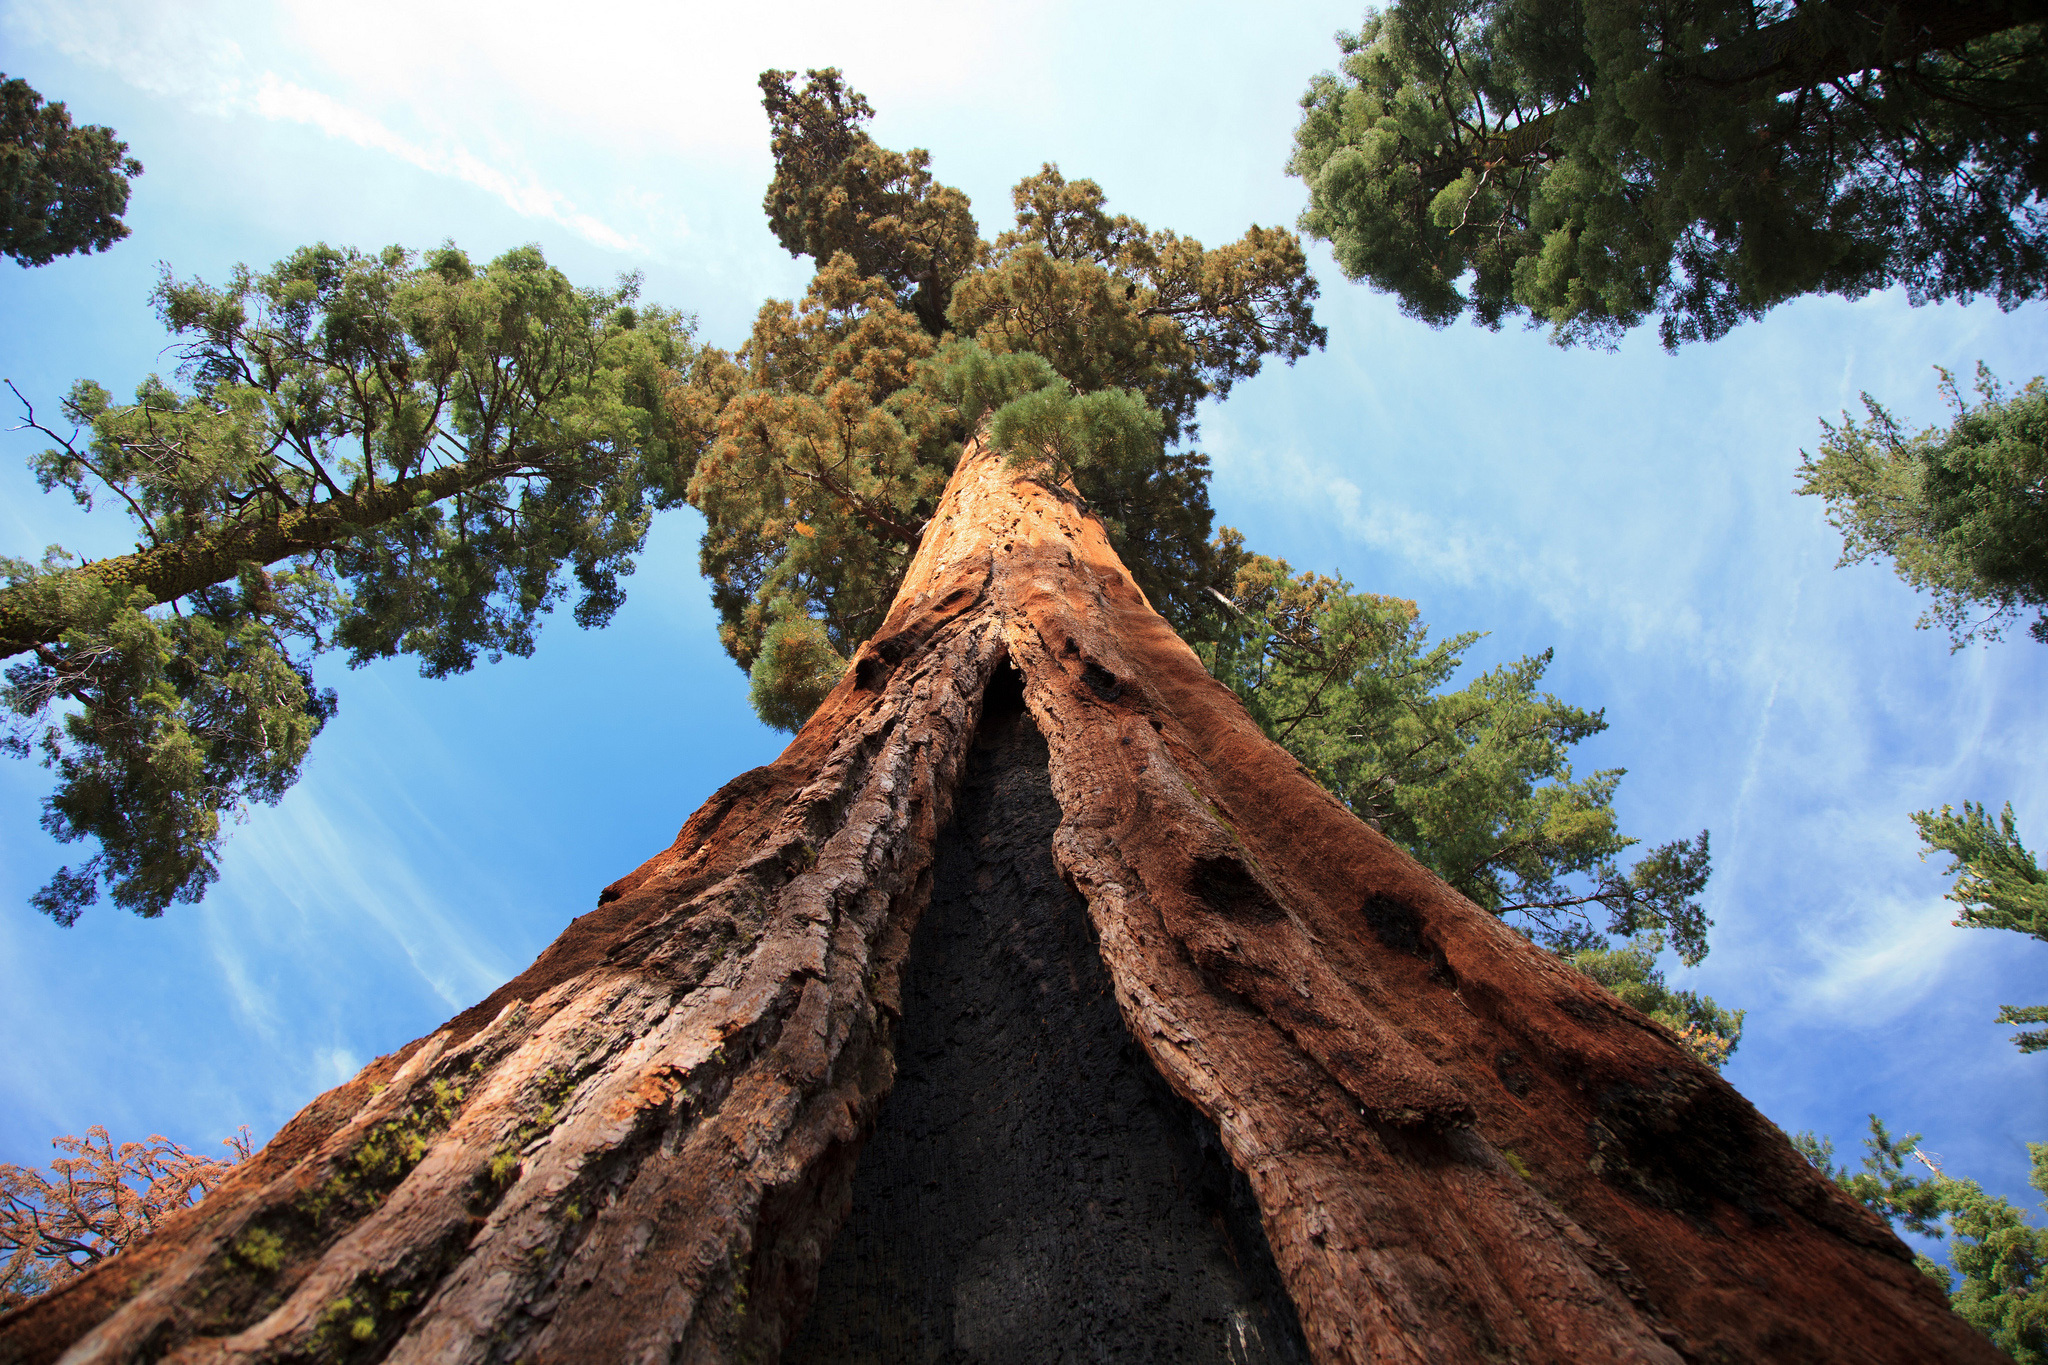 Площадь самого большого леса в мире. Калифорнийская Секвойя Гиперион. Секвойя дерево Гиперион. Самое высокое дерево Секвойя Гиперион. Американская Секвойя Гиперион.